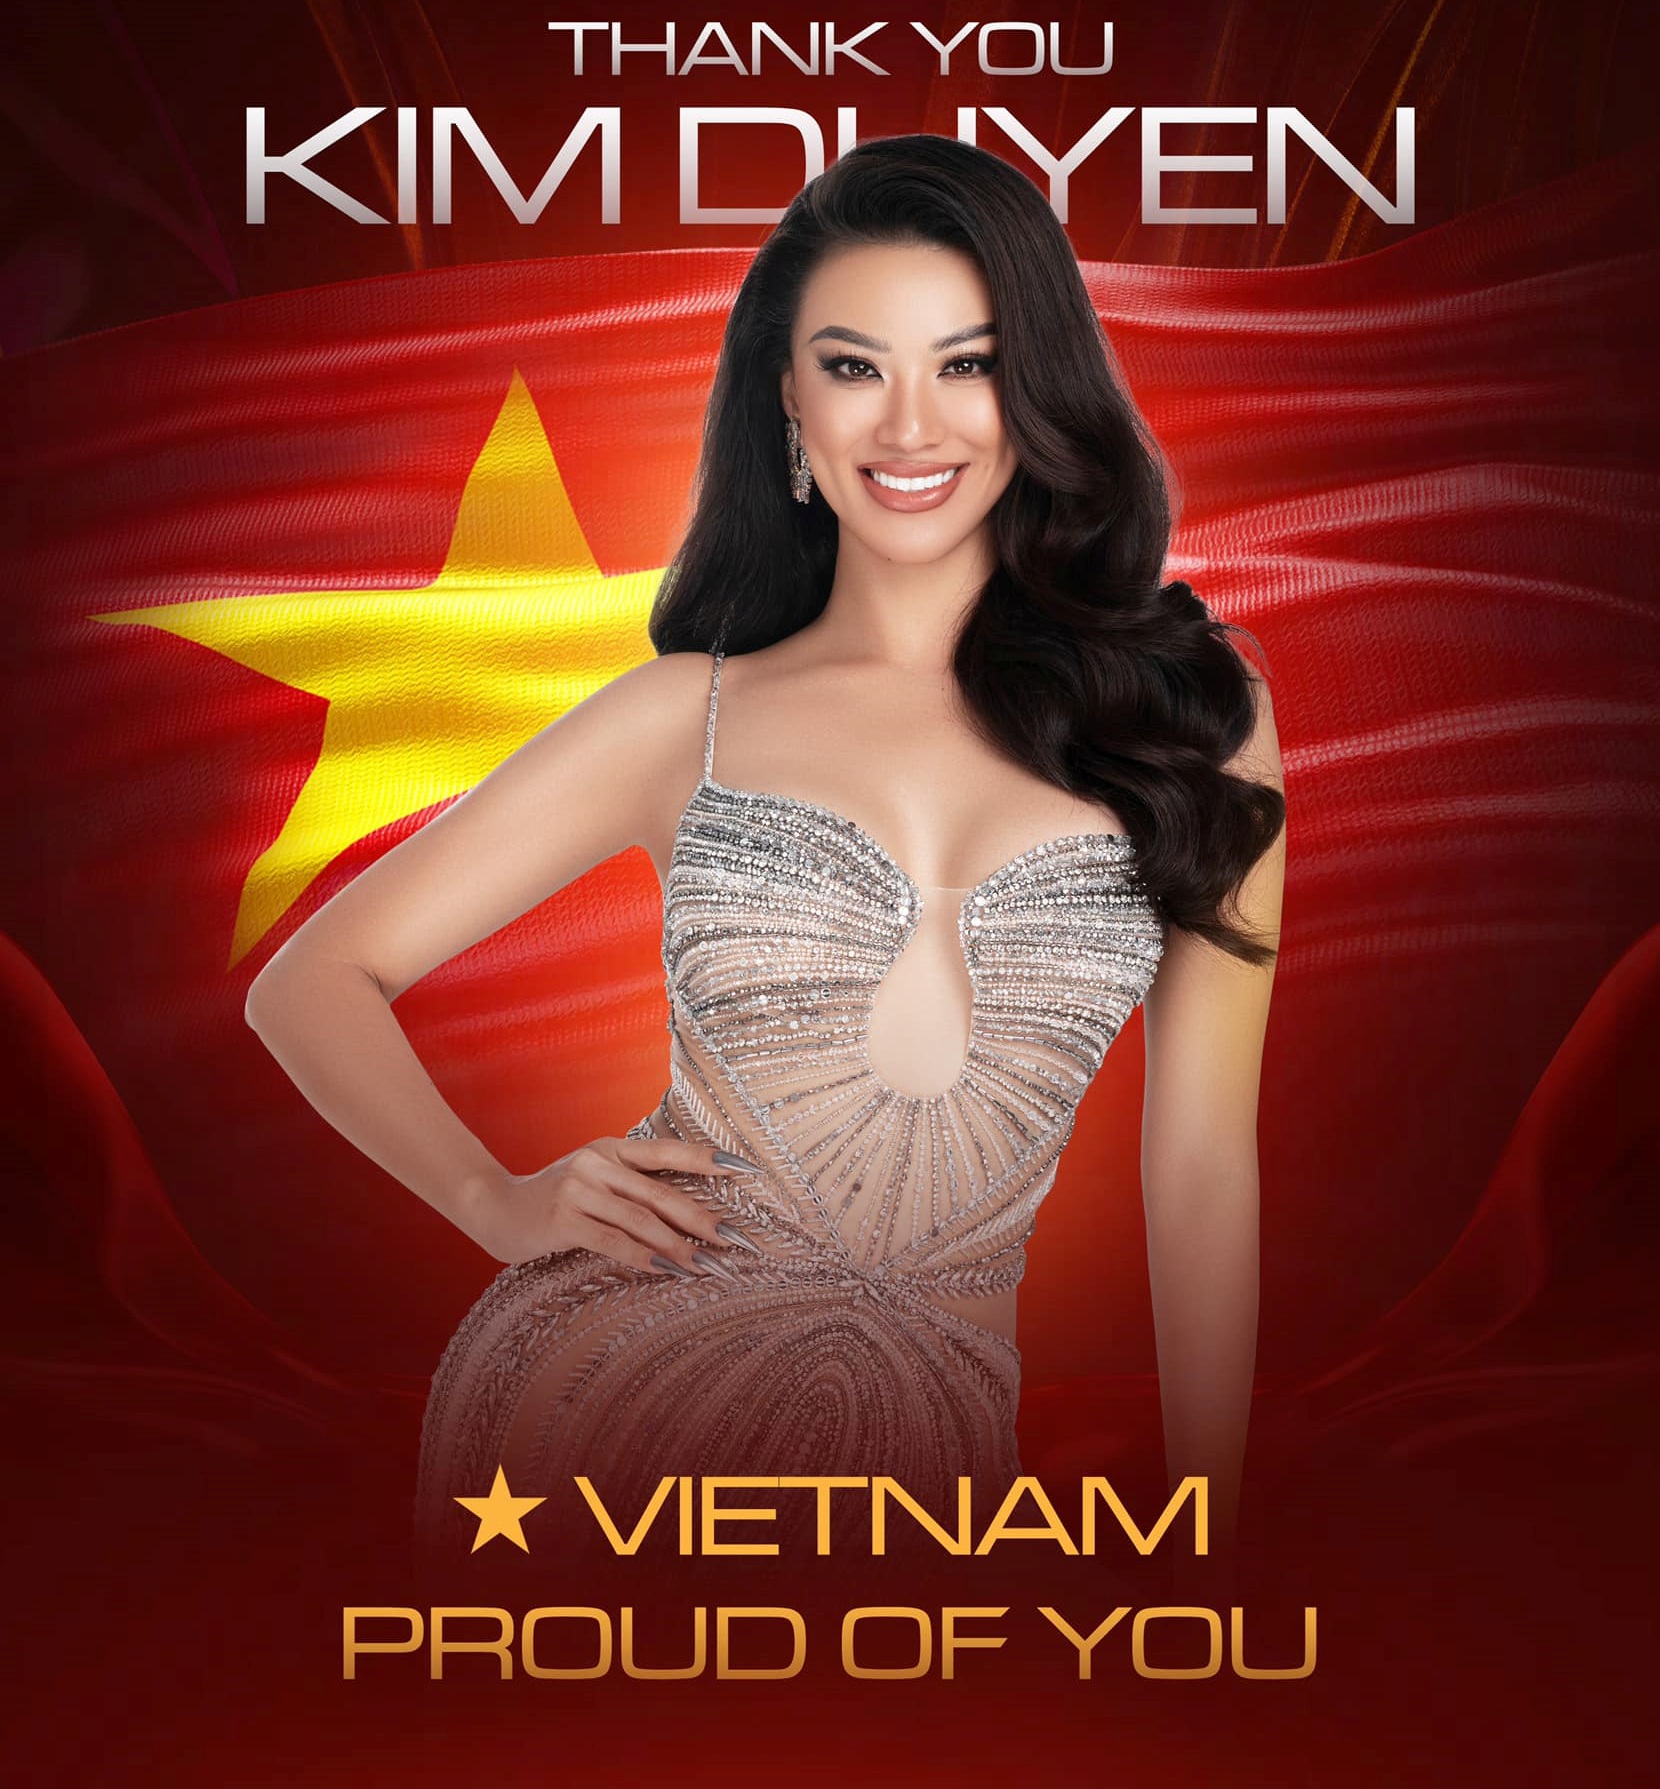 Sau khi tham gia hoa Hoa hậu Hoàn vũ, Kim Duyên tiếp tục đến với Hoa hậu Siêu quốc gia.